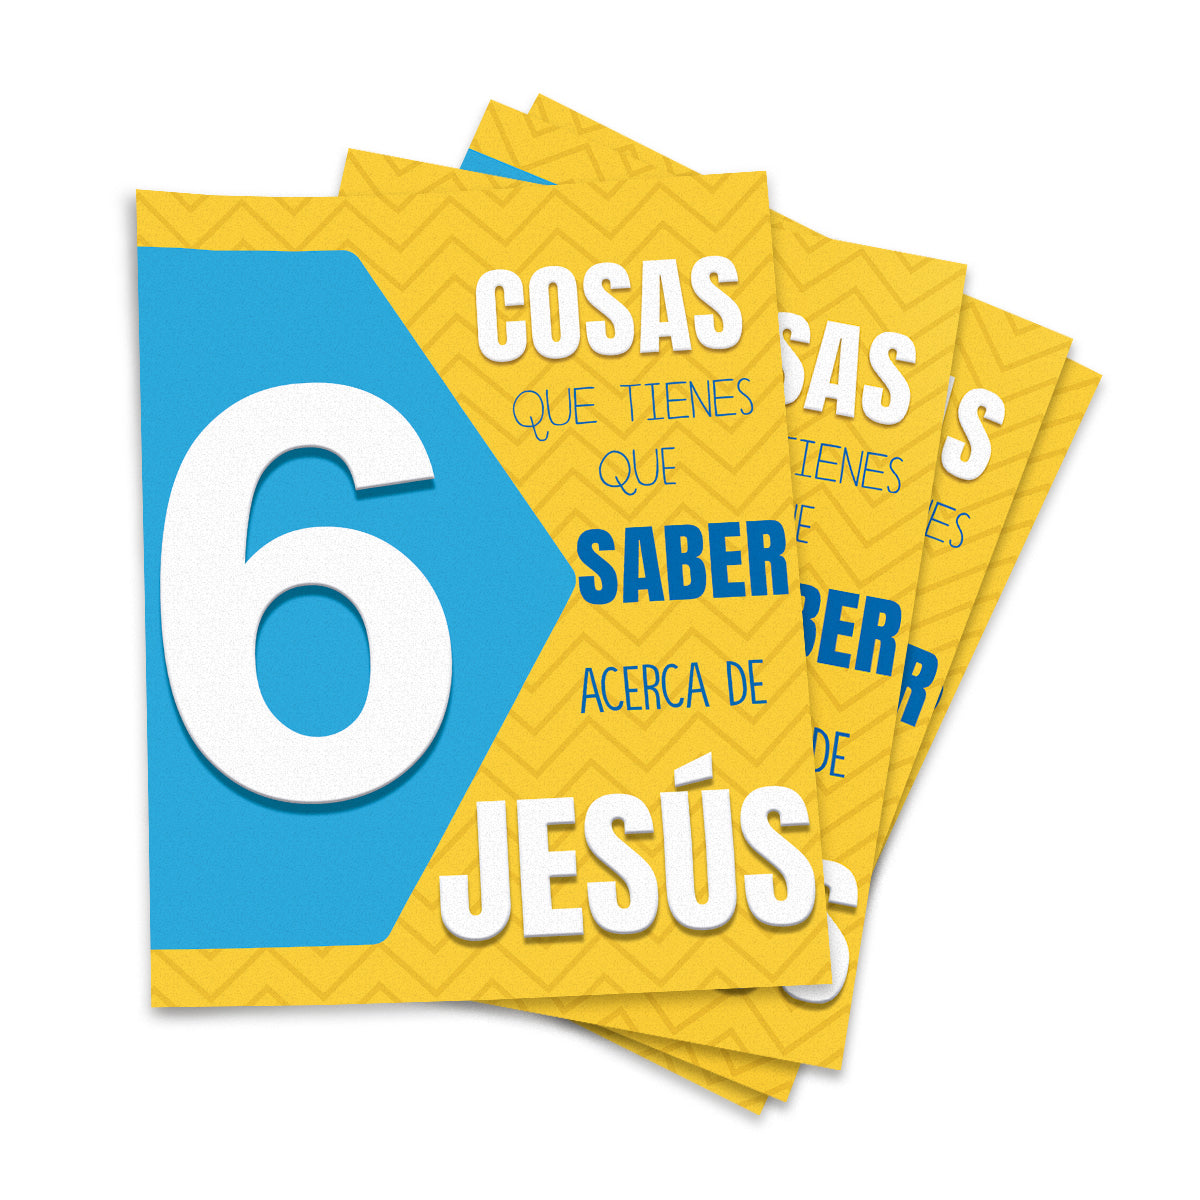 6 cosas que tienes que saber acerca de jesús (Folleto evangelistico) 100 pzas.